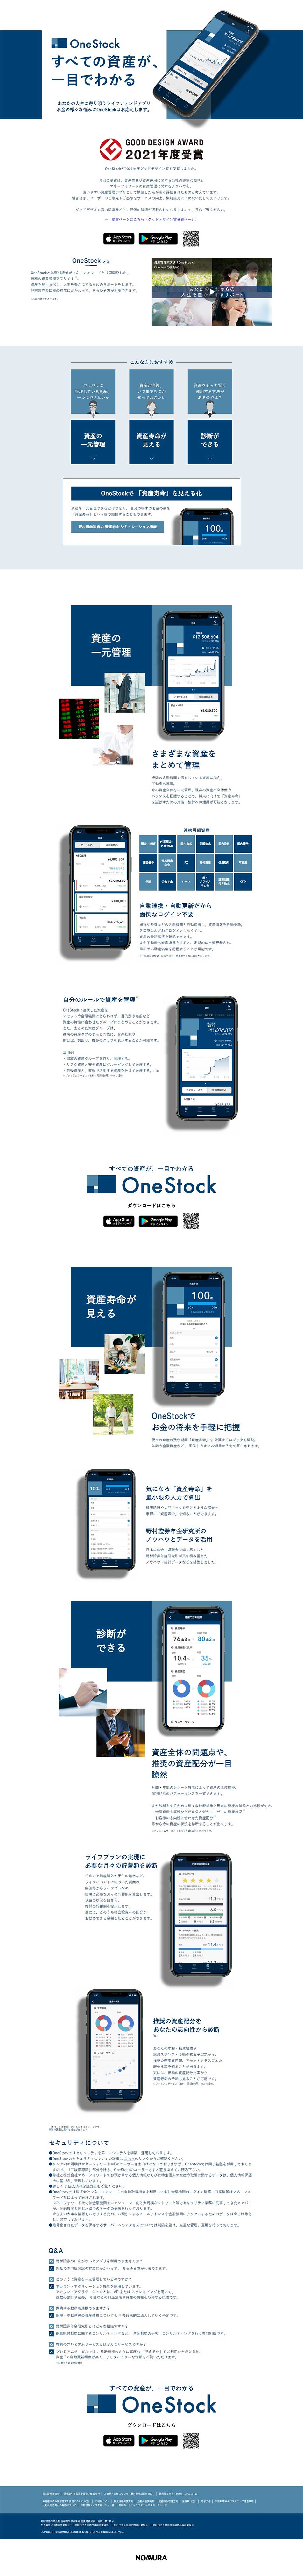 OneStock_pc_1